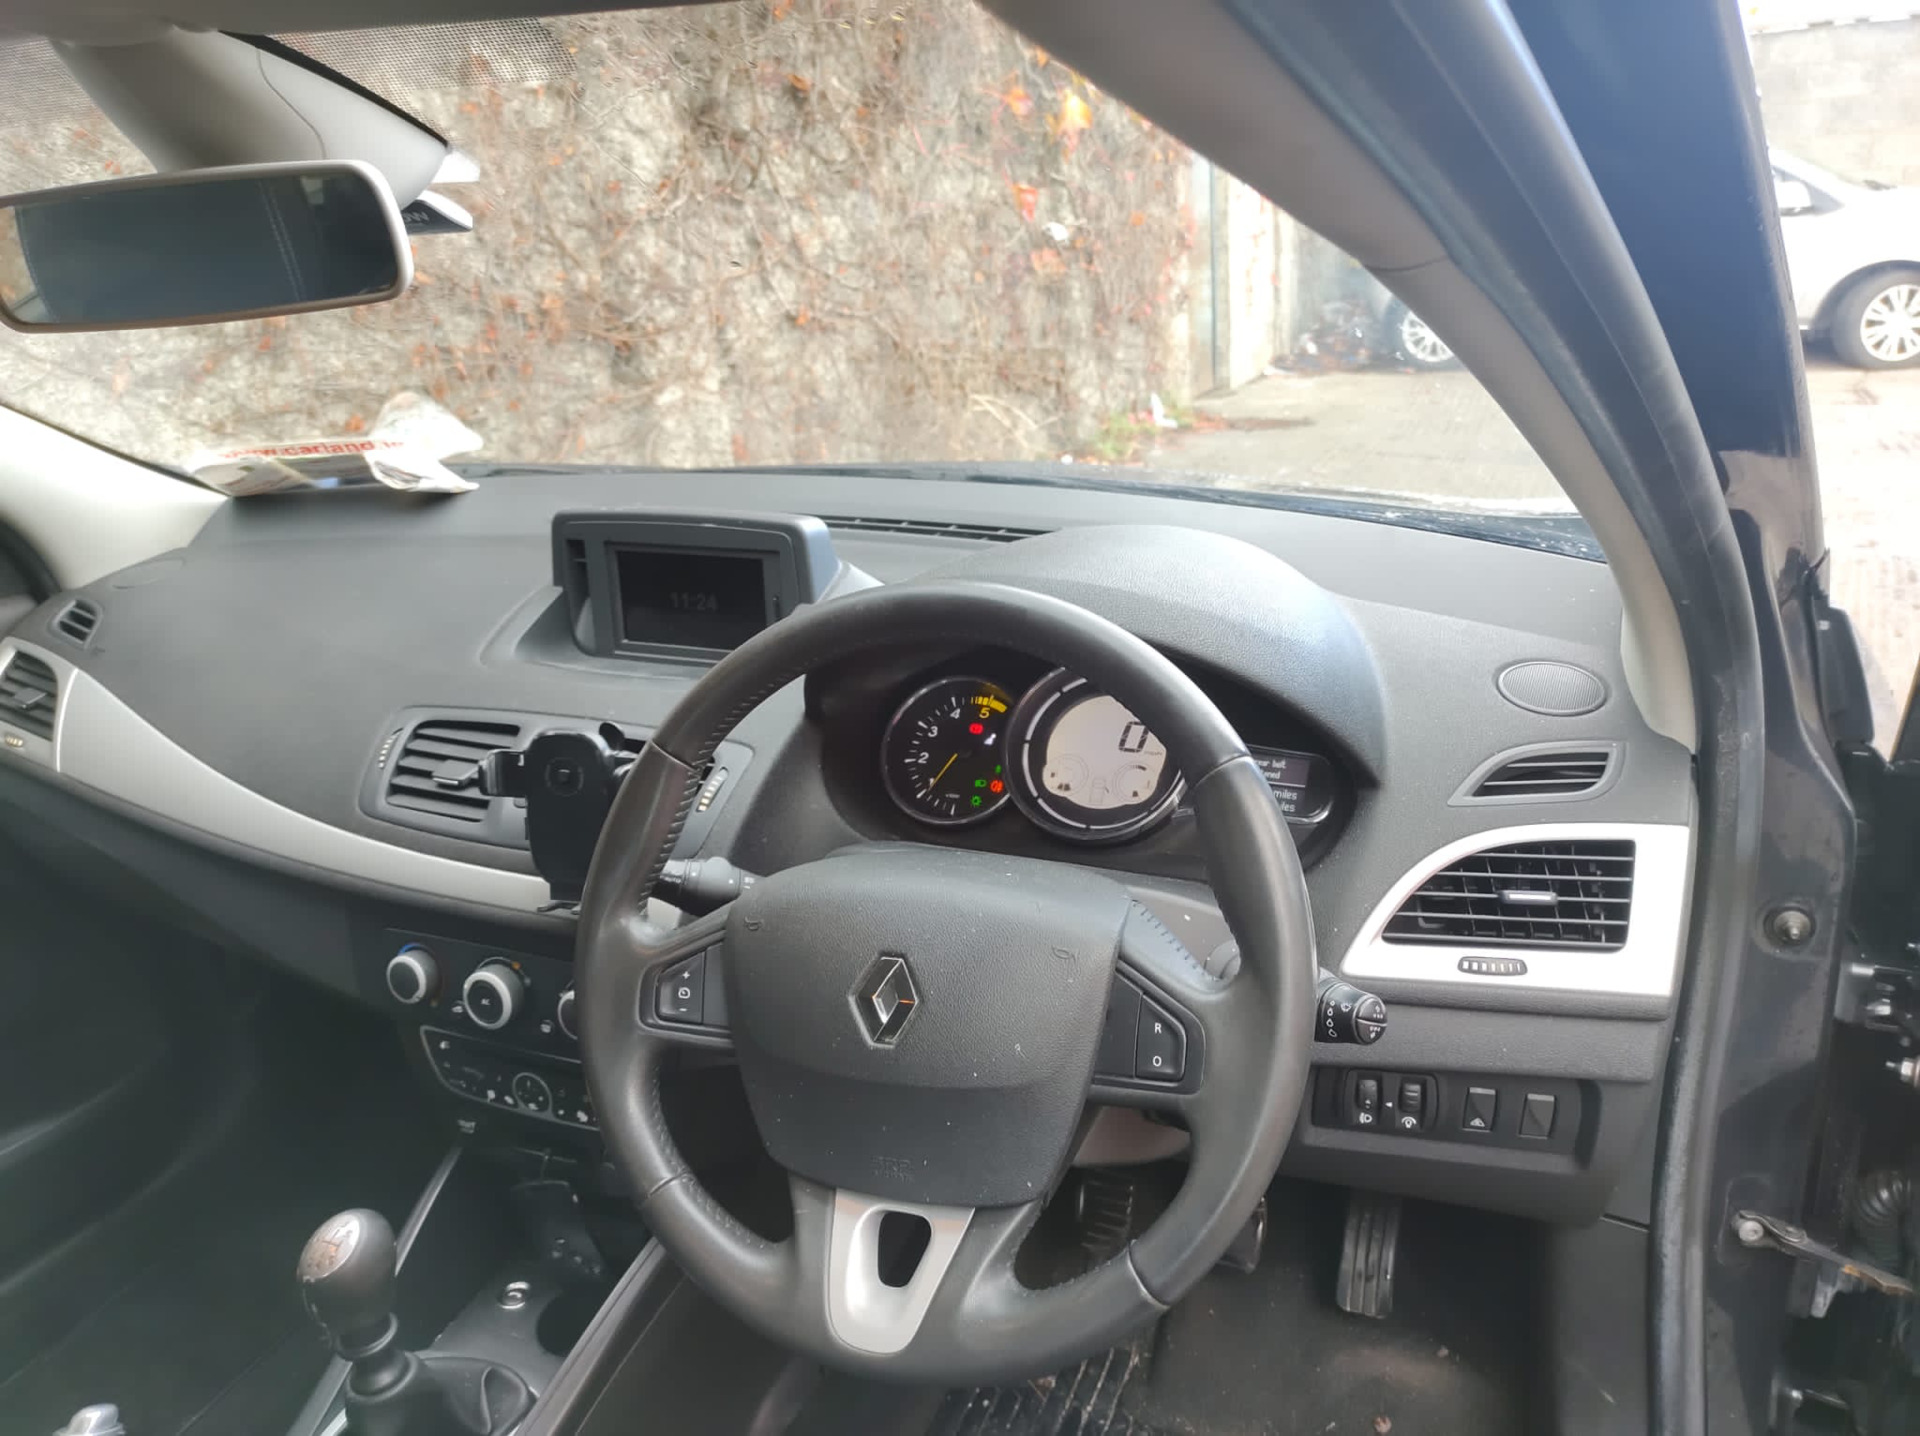 Used Renault Megane 2011 in Dublin